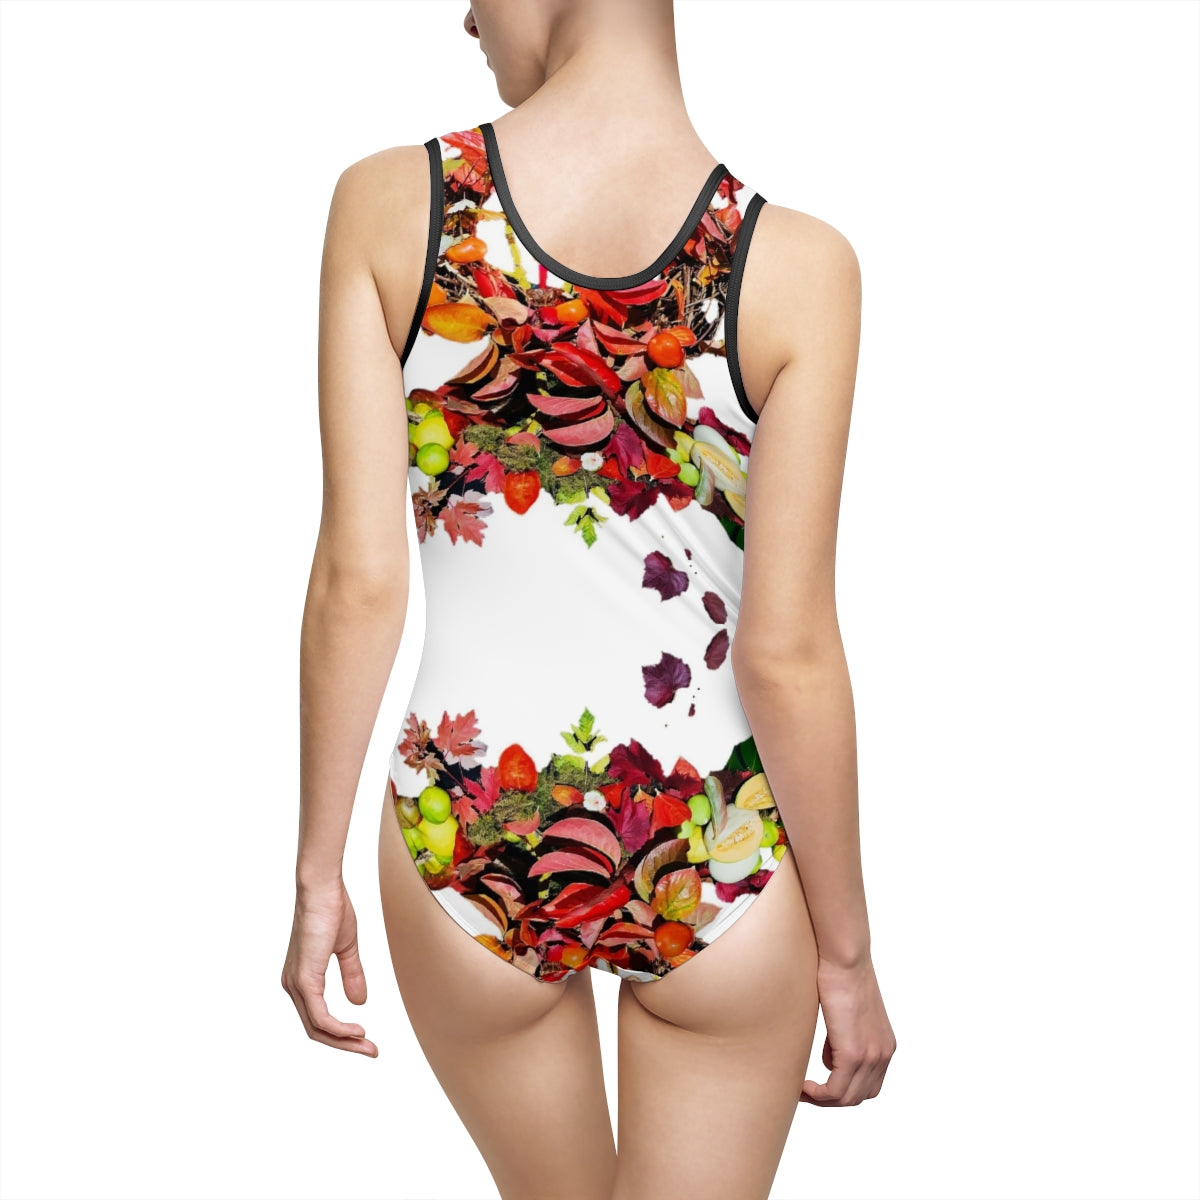 Women's Classic One-Piece Swimsuit shons gauntcho floral